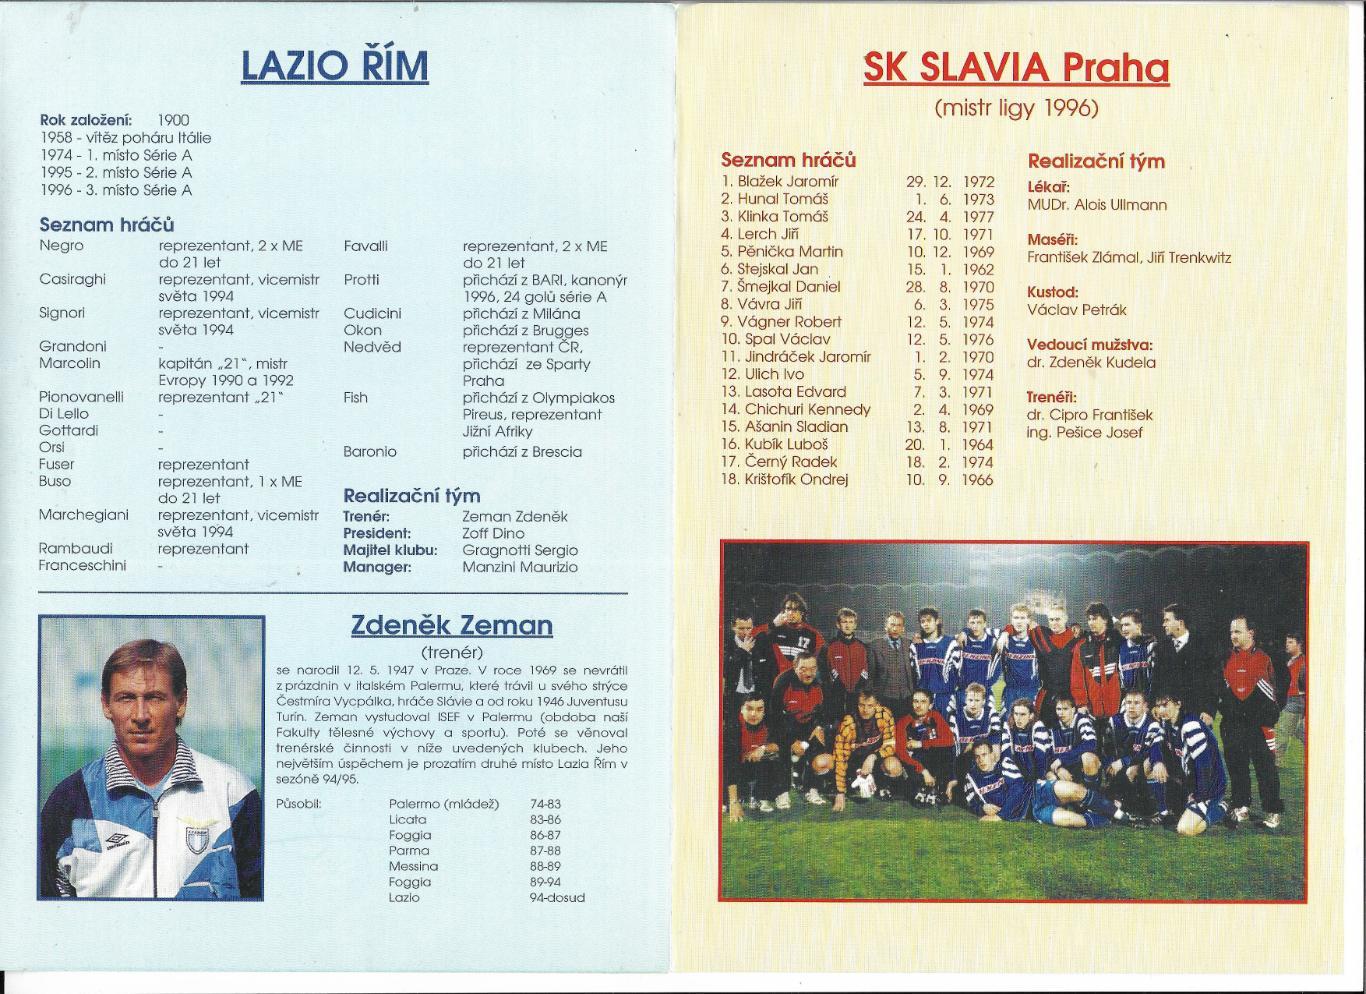 программа. LAZIO_Rim v Praze._Slavia _31.07. 1996, v Bohemians_01.08.1996_friend 1